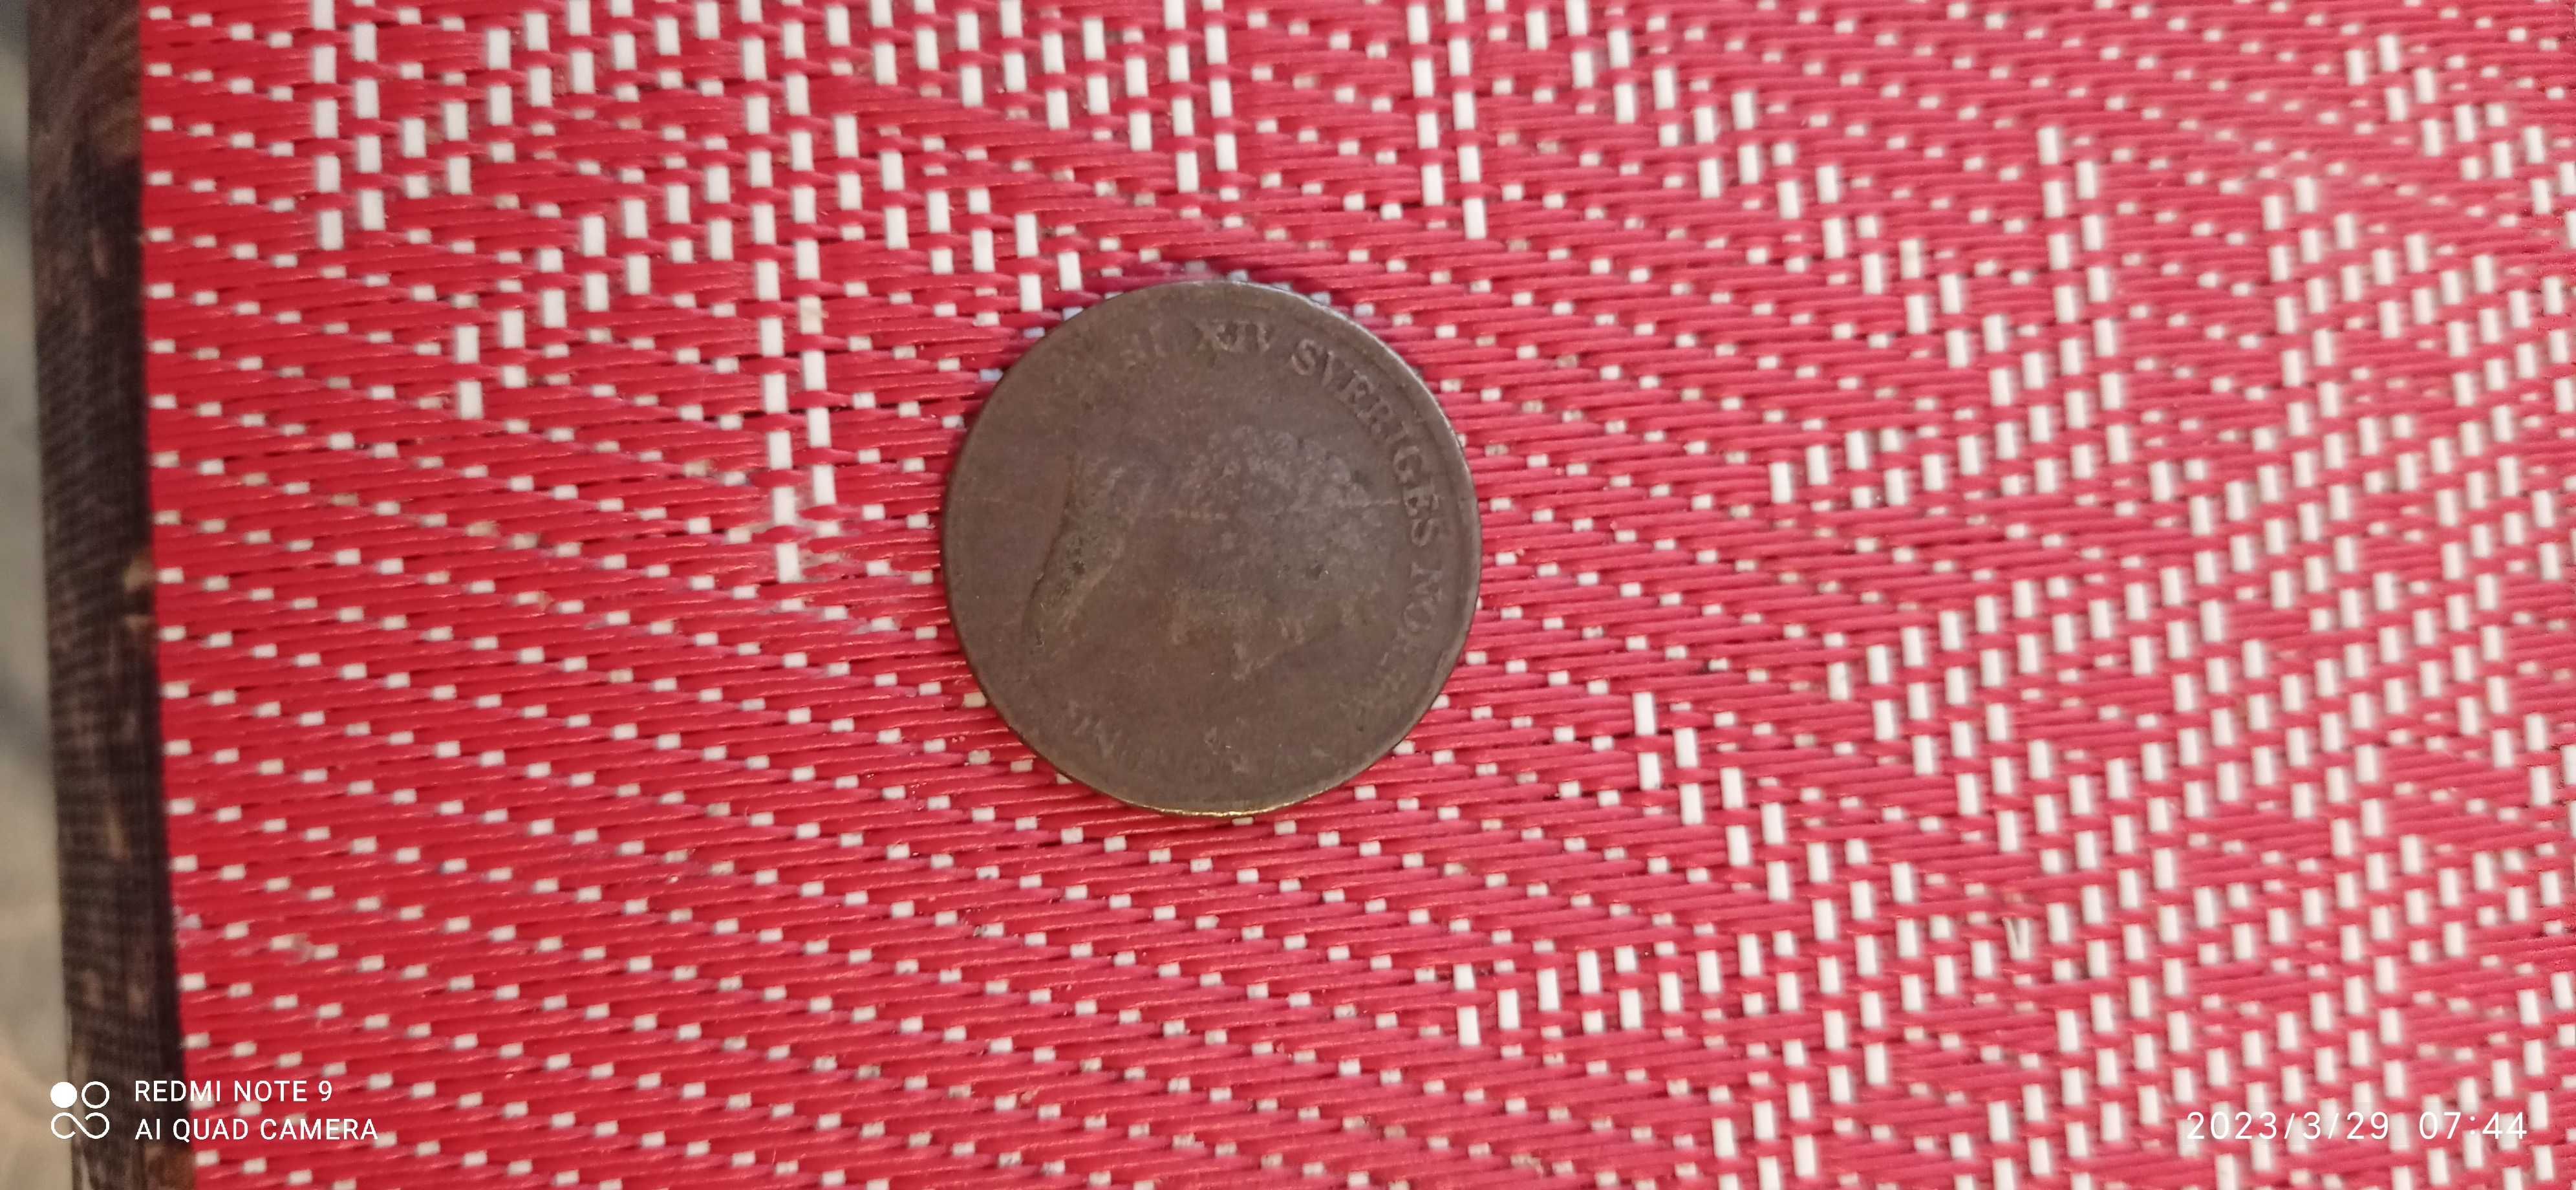 Stare szwedzkie monety